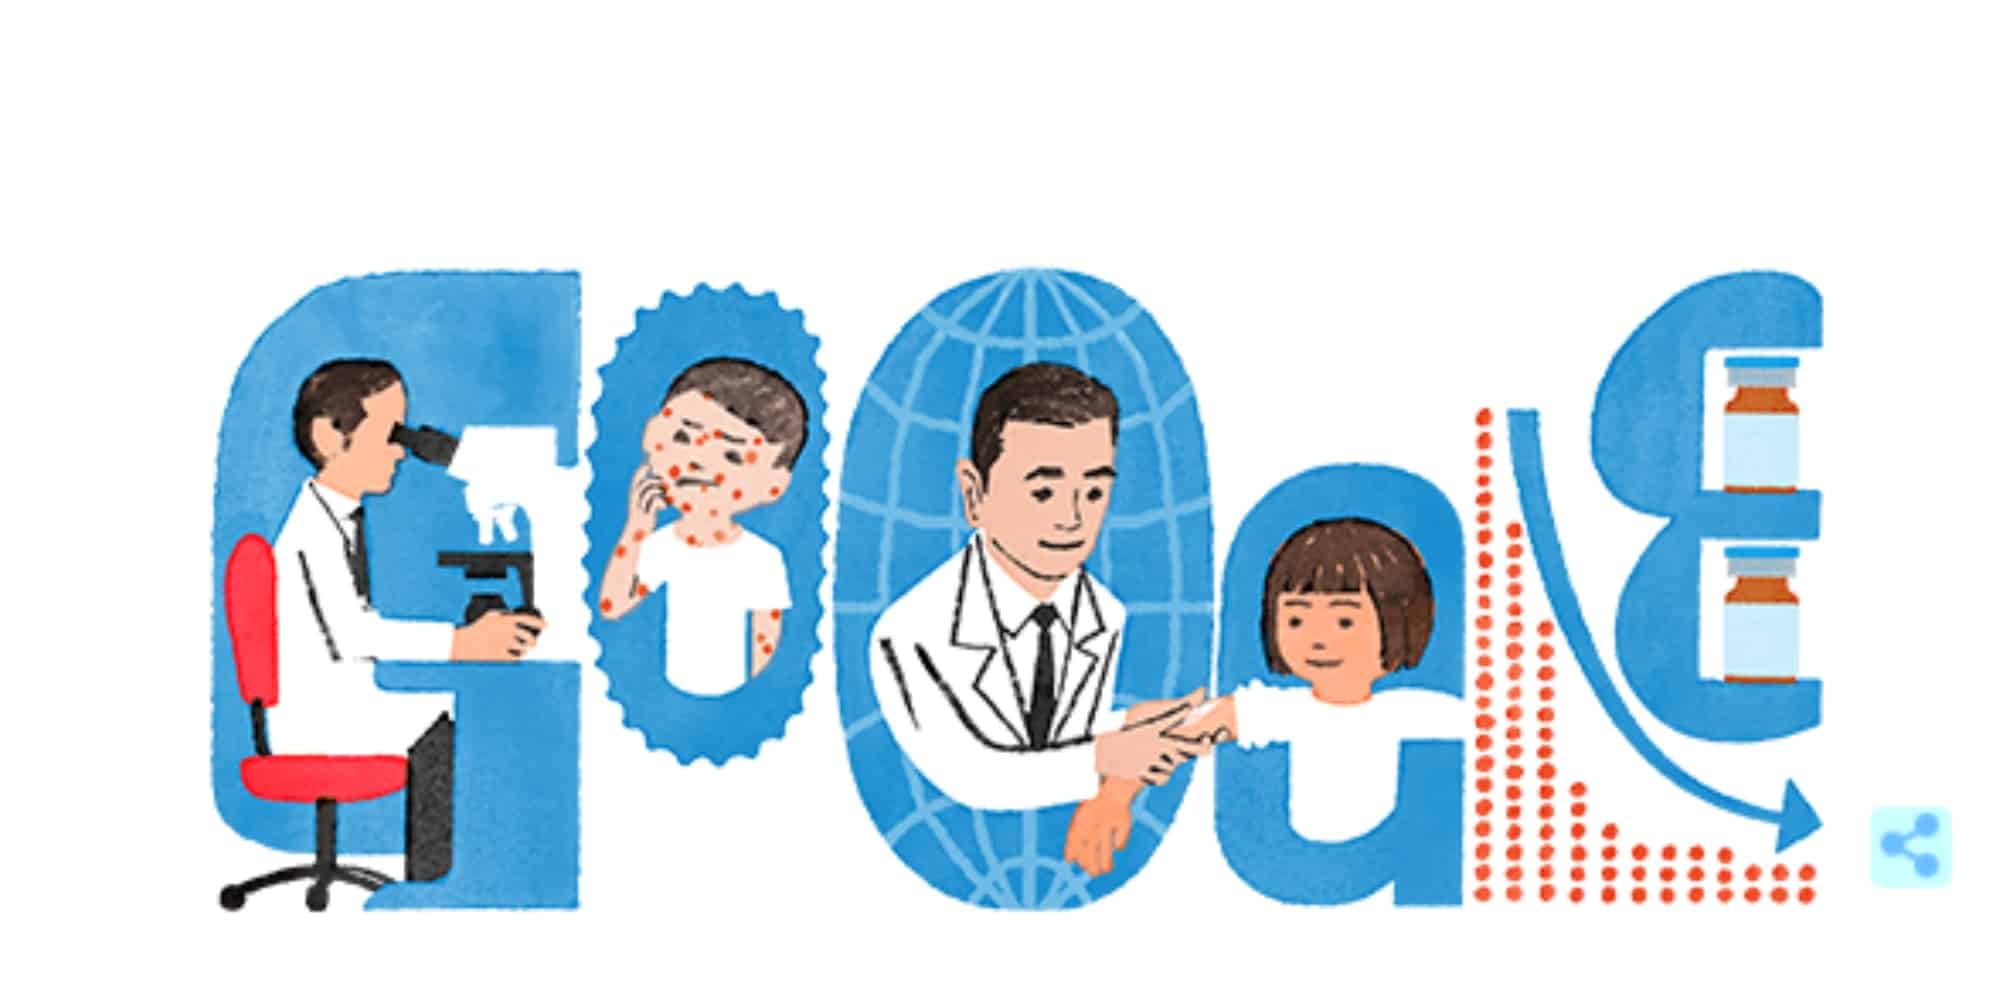 Το doodle της Google για τον Michiaki Takahashi